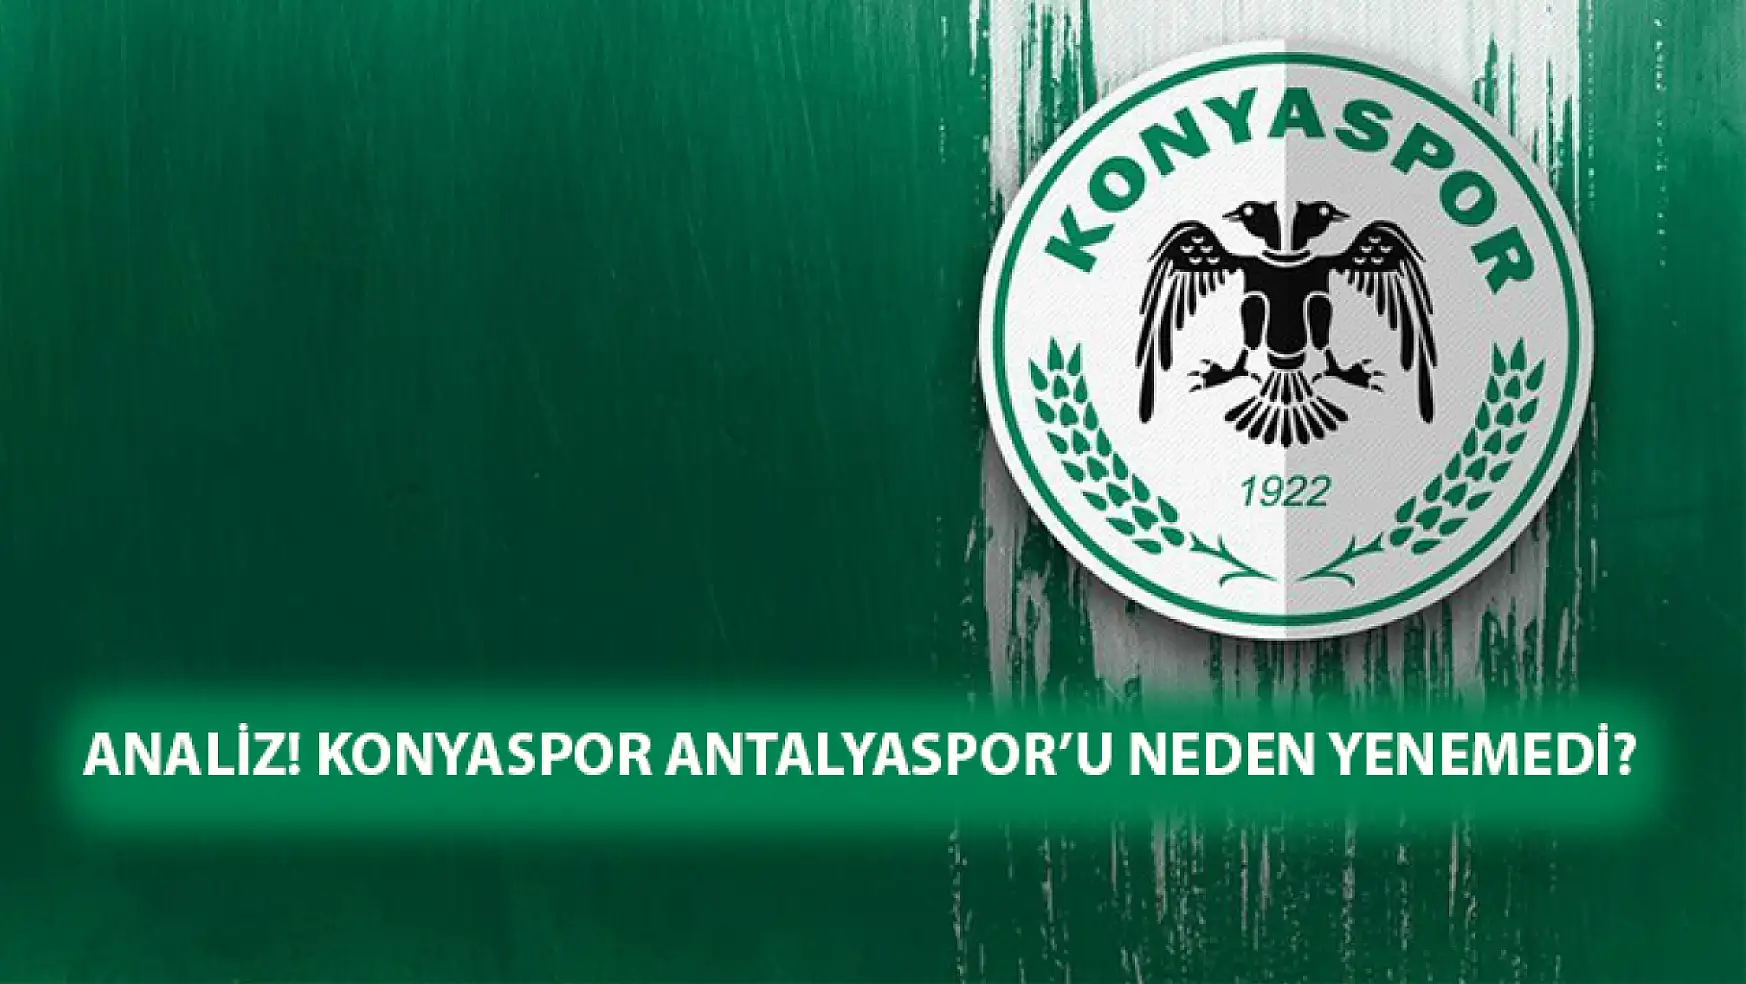 Analiz! Konyaspor Antalyaspor'u neden yenemedi?